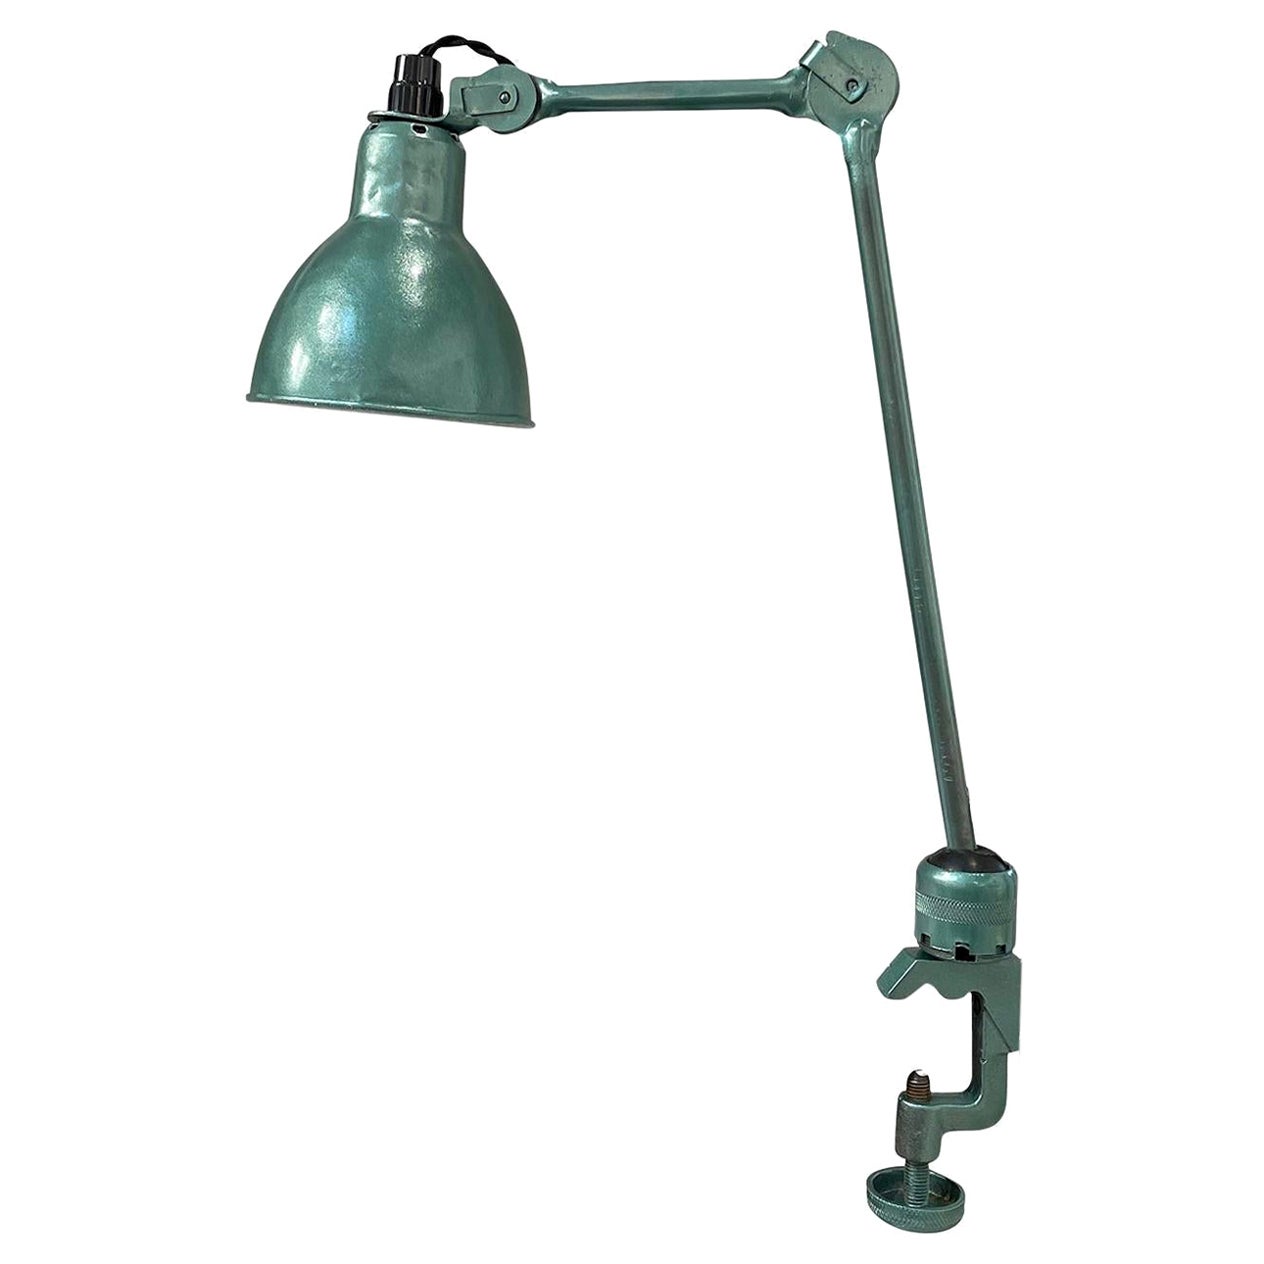 Grüne französische Industrie-Metall-Arbeitslampe des 20. Jahrhunderts – Vintage-Büroleuchte